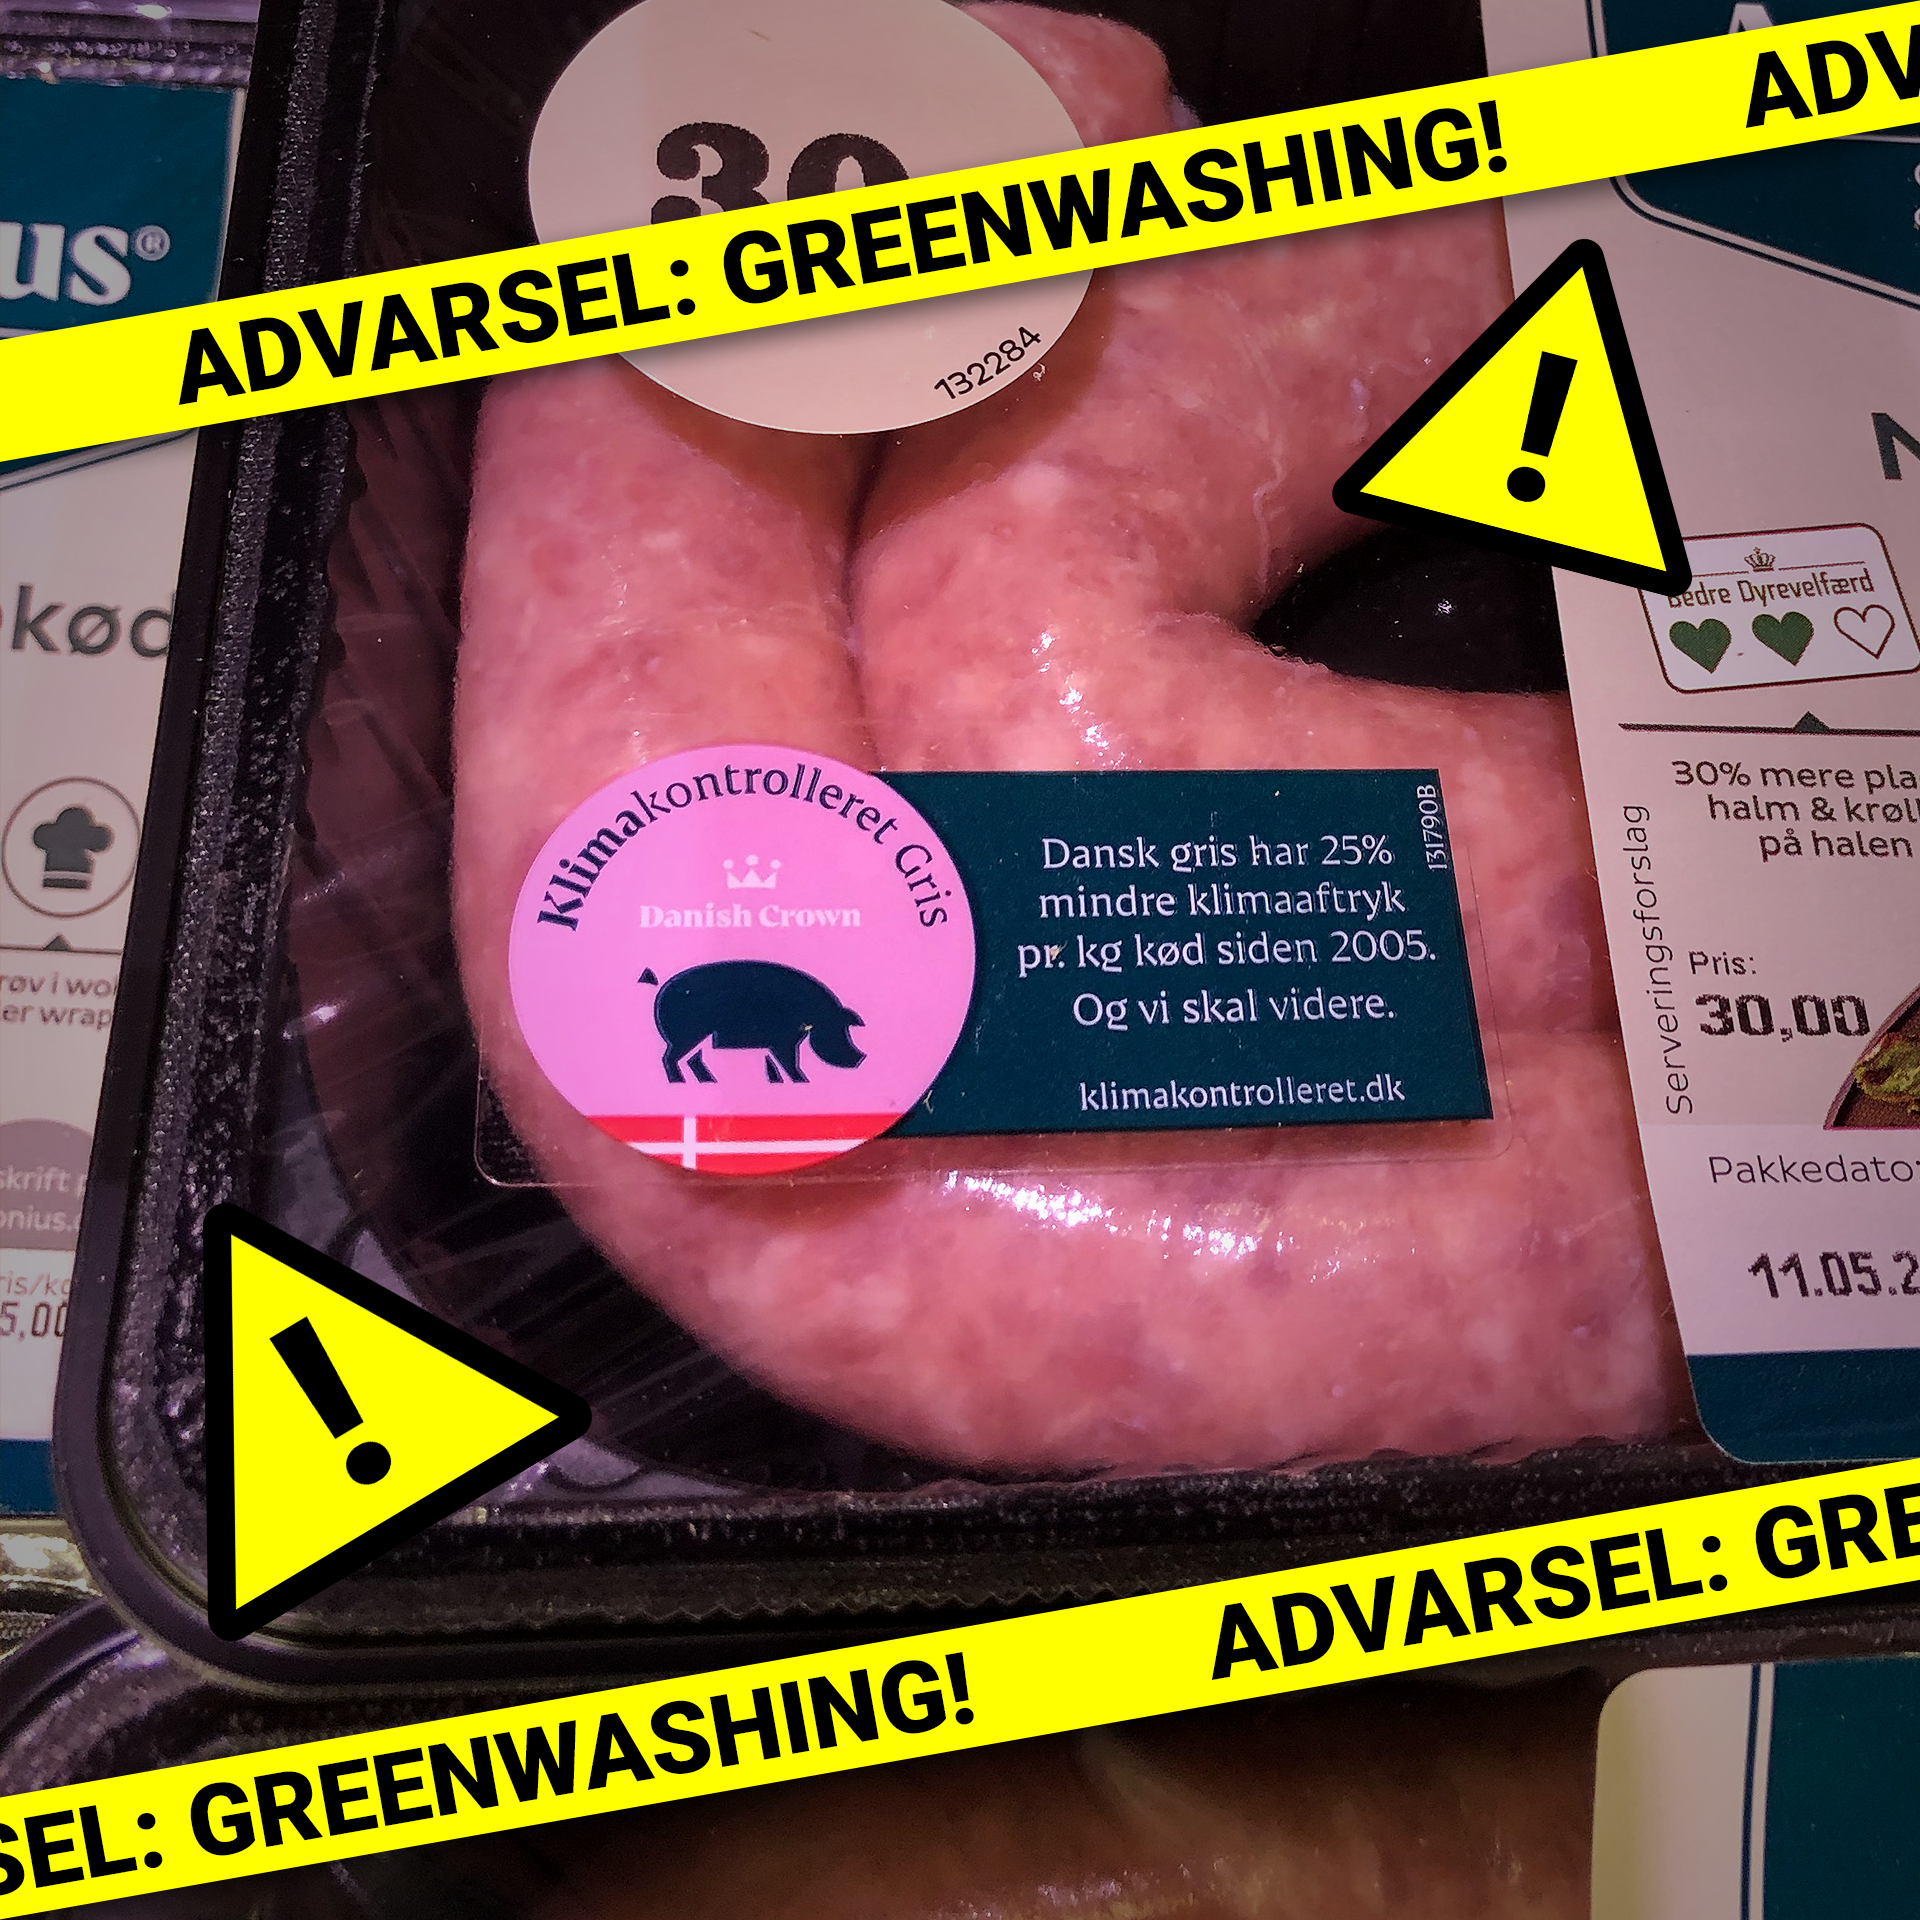 Greenwashing af svinekød fra Danish Crown